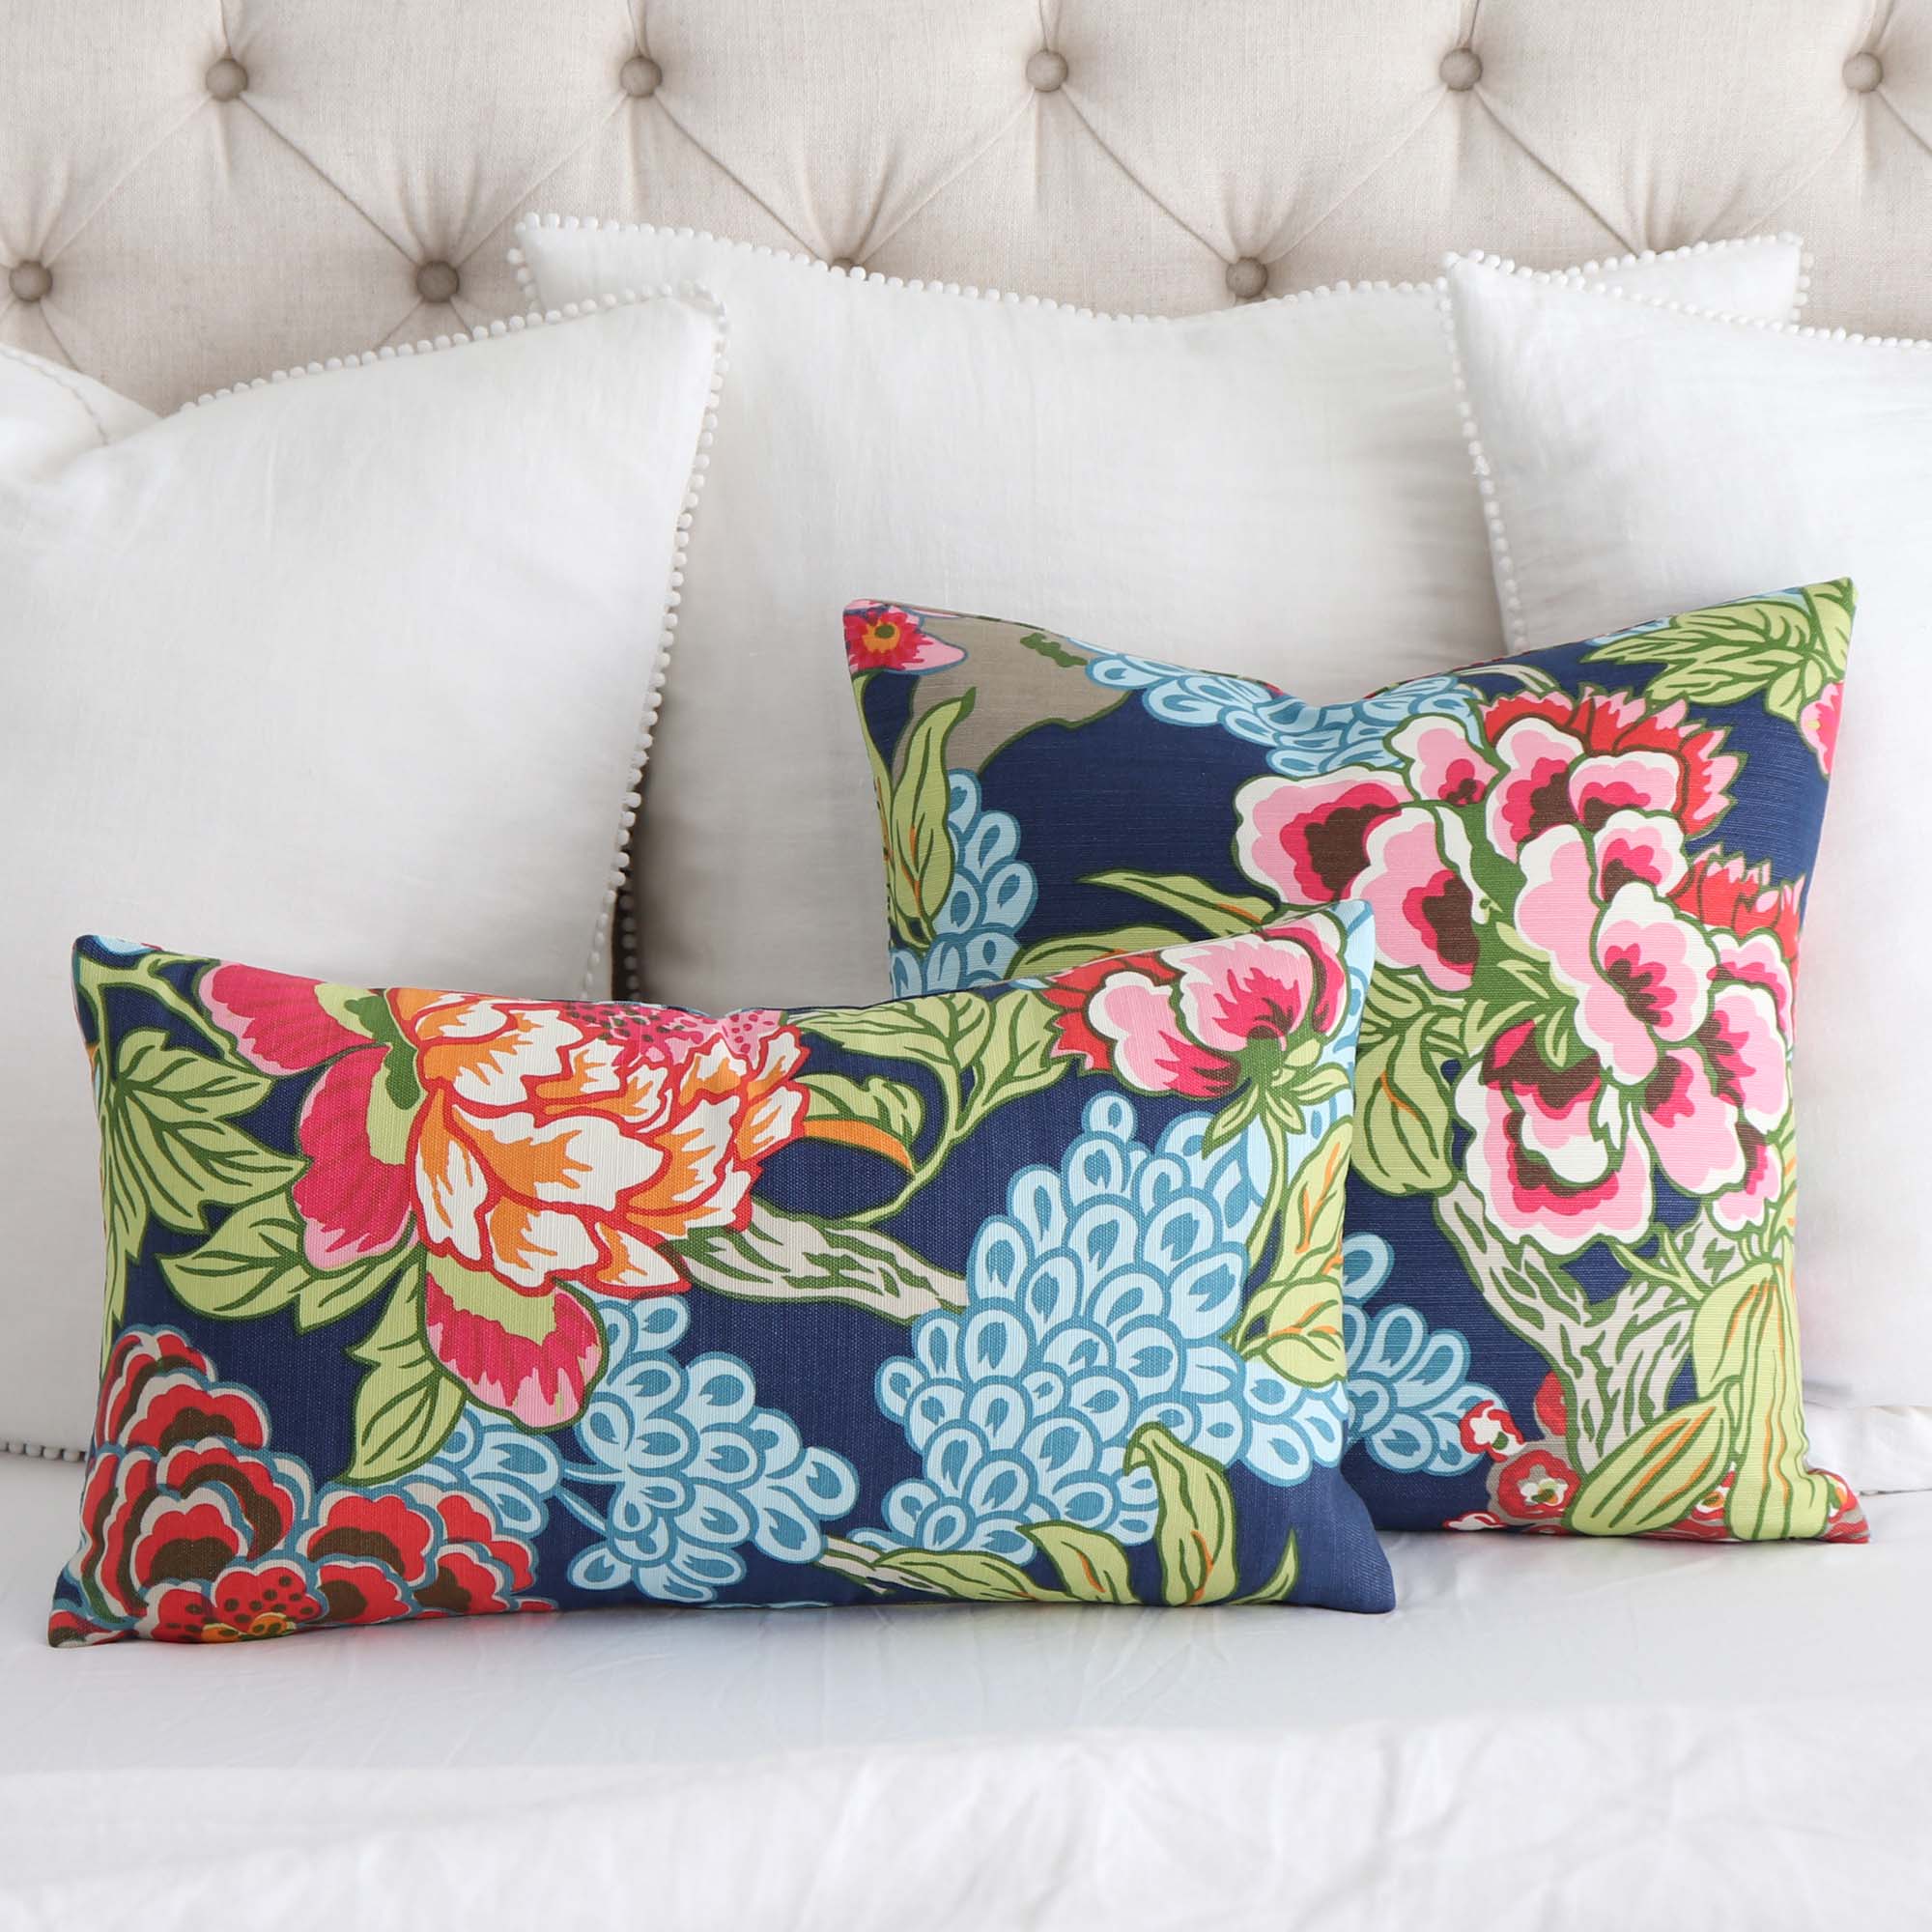 Thibaut Honshu Navy Floral Designer Throw Pillow Cover on White Linen Bedding